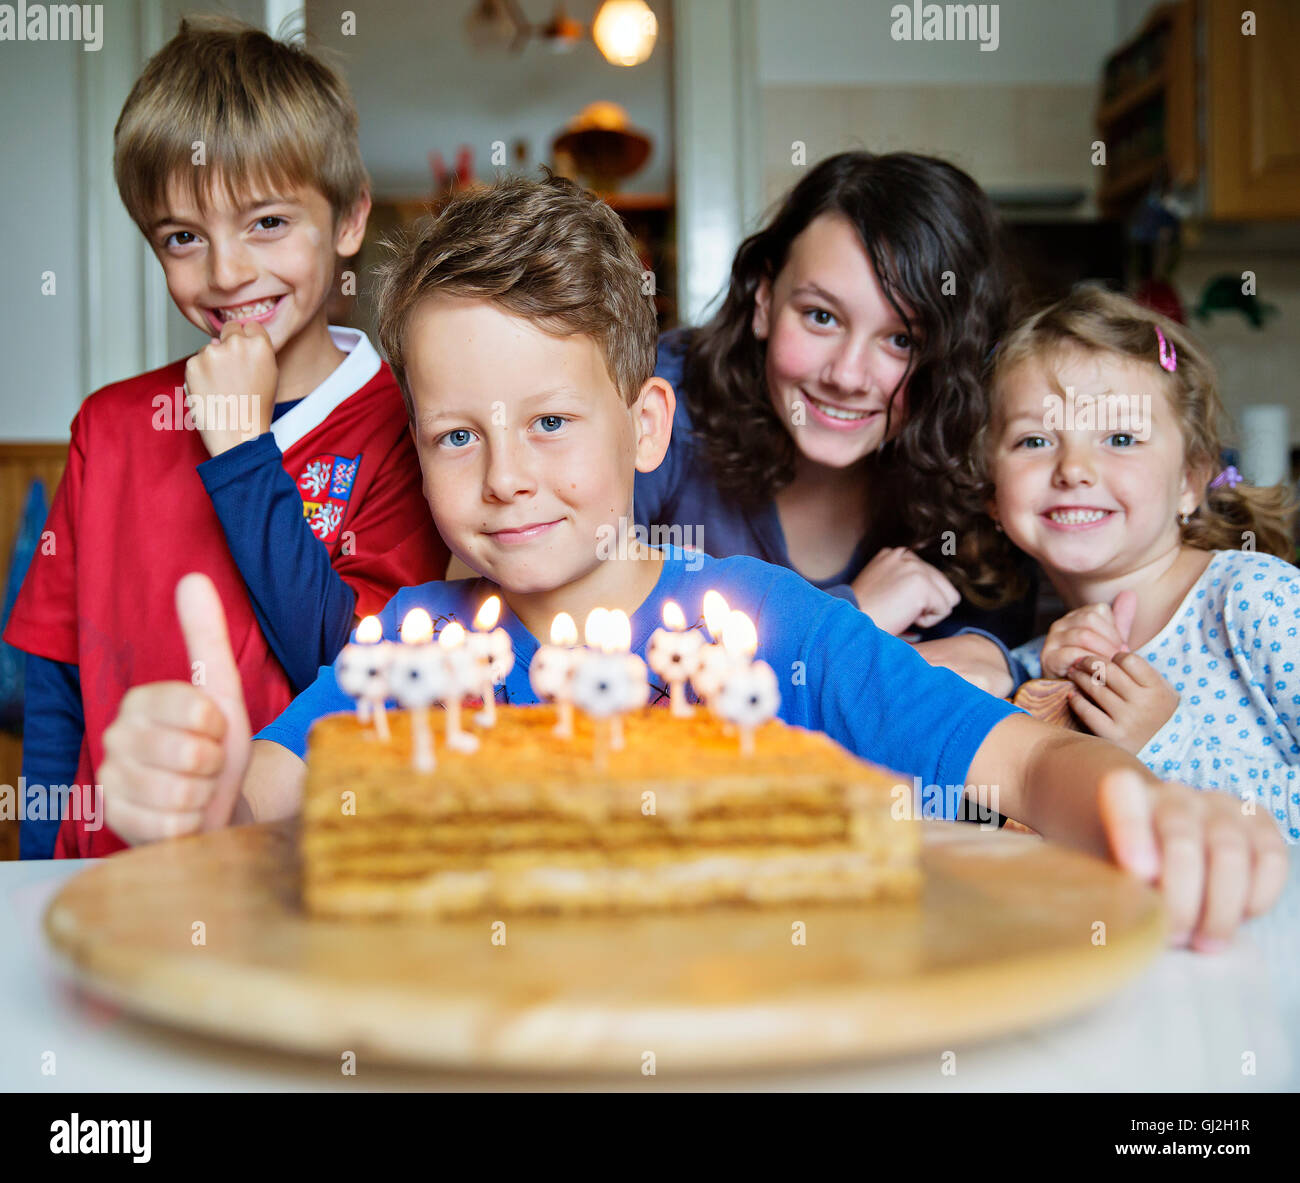 Festa di compleanno, party, candele, Marlenka torta, kid, ragazzi, bambini, bambini Foto Stock